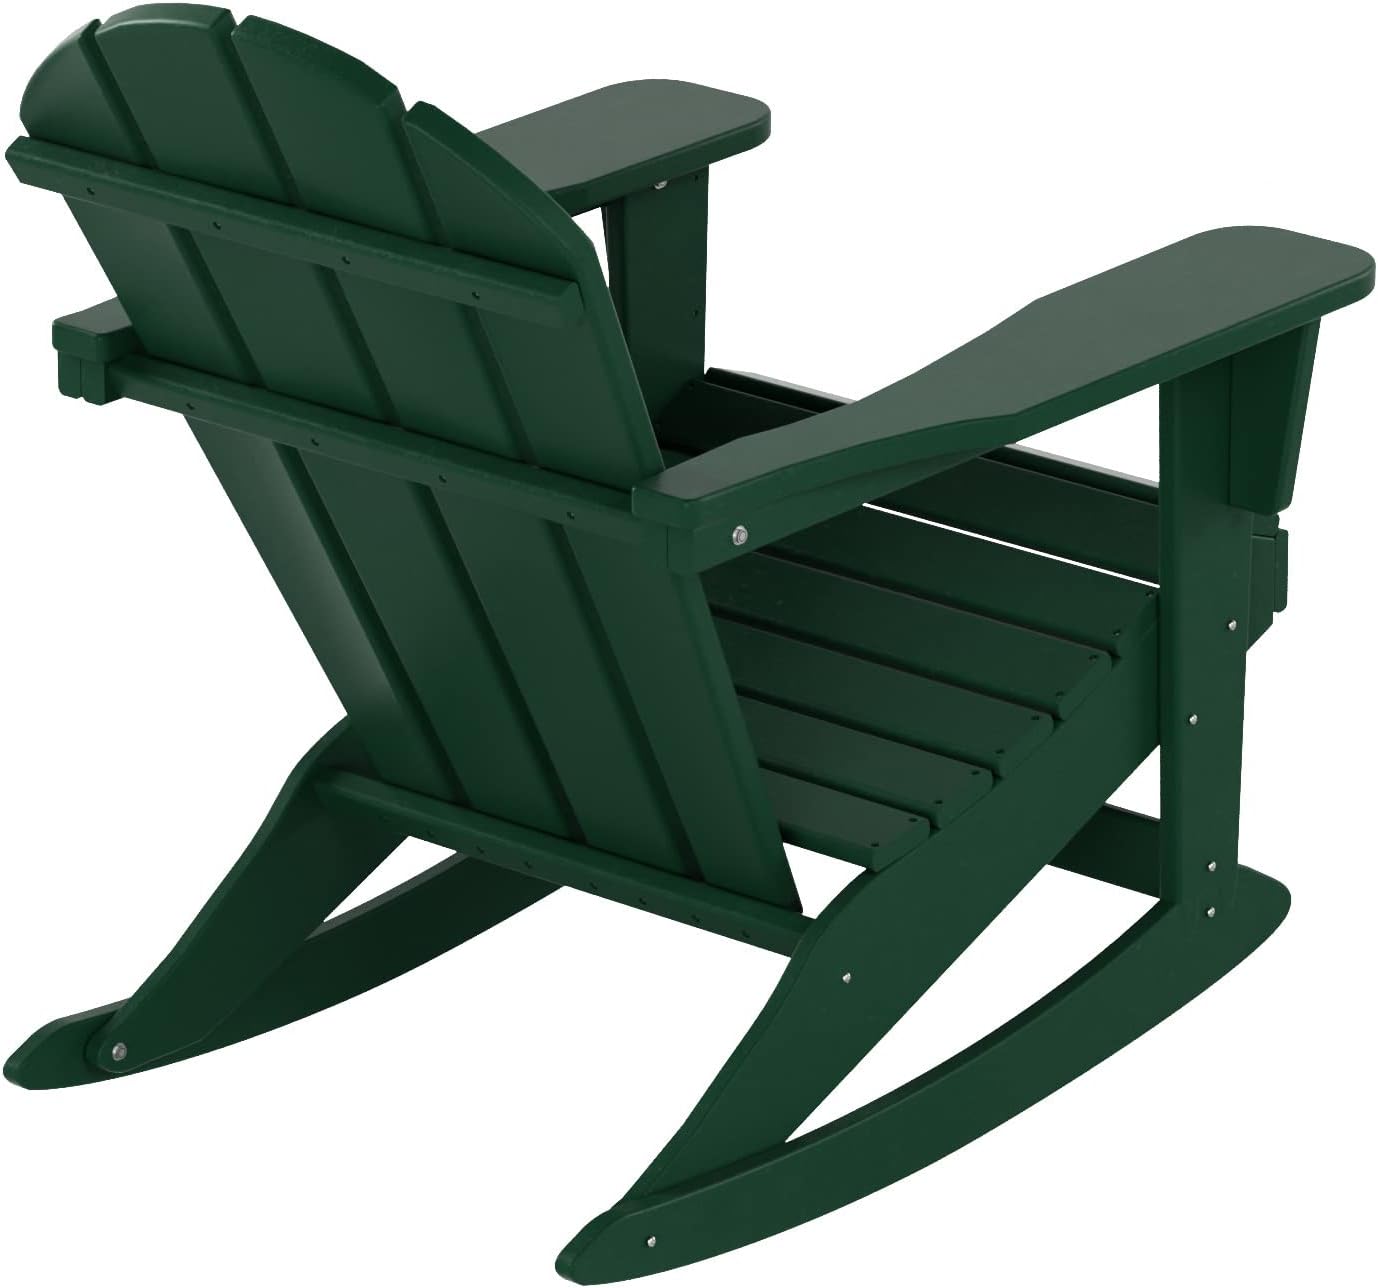 Malibu Mecedora para exteriores, resistente a todo tipo de clima, silla